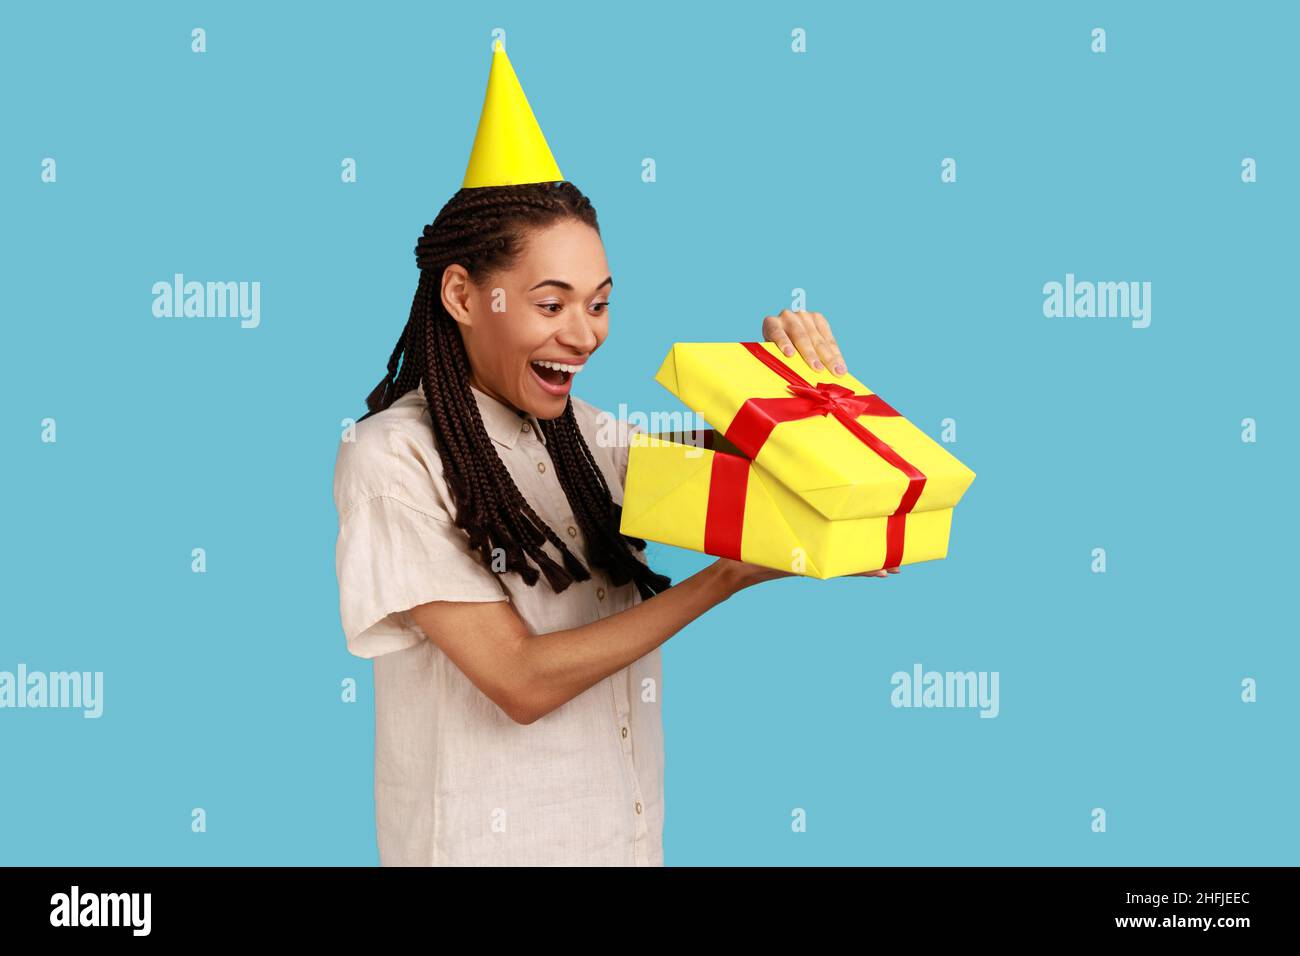 Porträt einer staunenden Frau in gelbem Partykegel, die in die Geschenkbox schaut, das Geschenk öffnet und voller Aufregung in das Innere blickt, das weißes Hemd trägt. Innenaufnahme des Studios isoliert auf blauem Hintergrund. Stockfoto